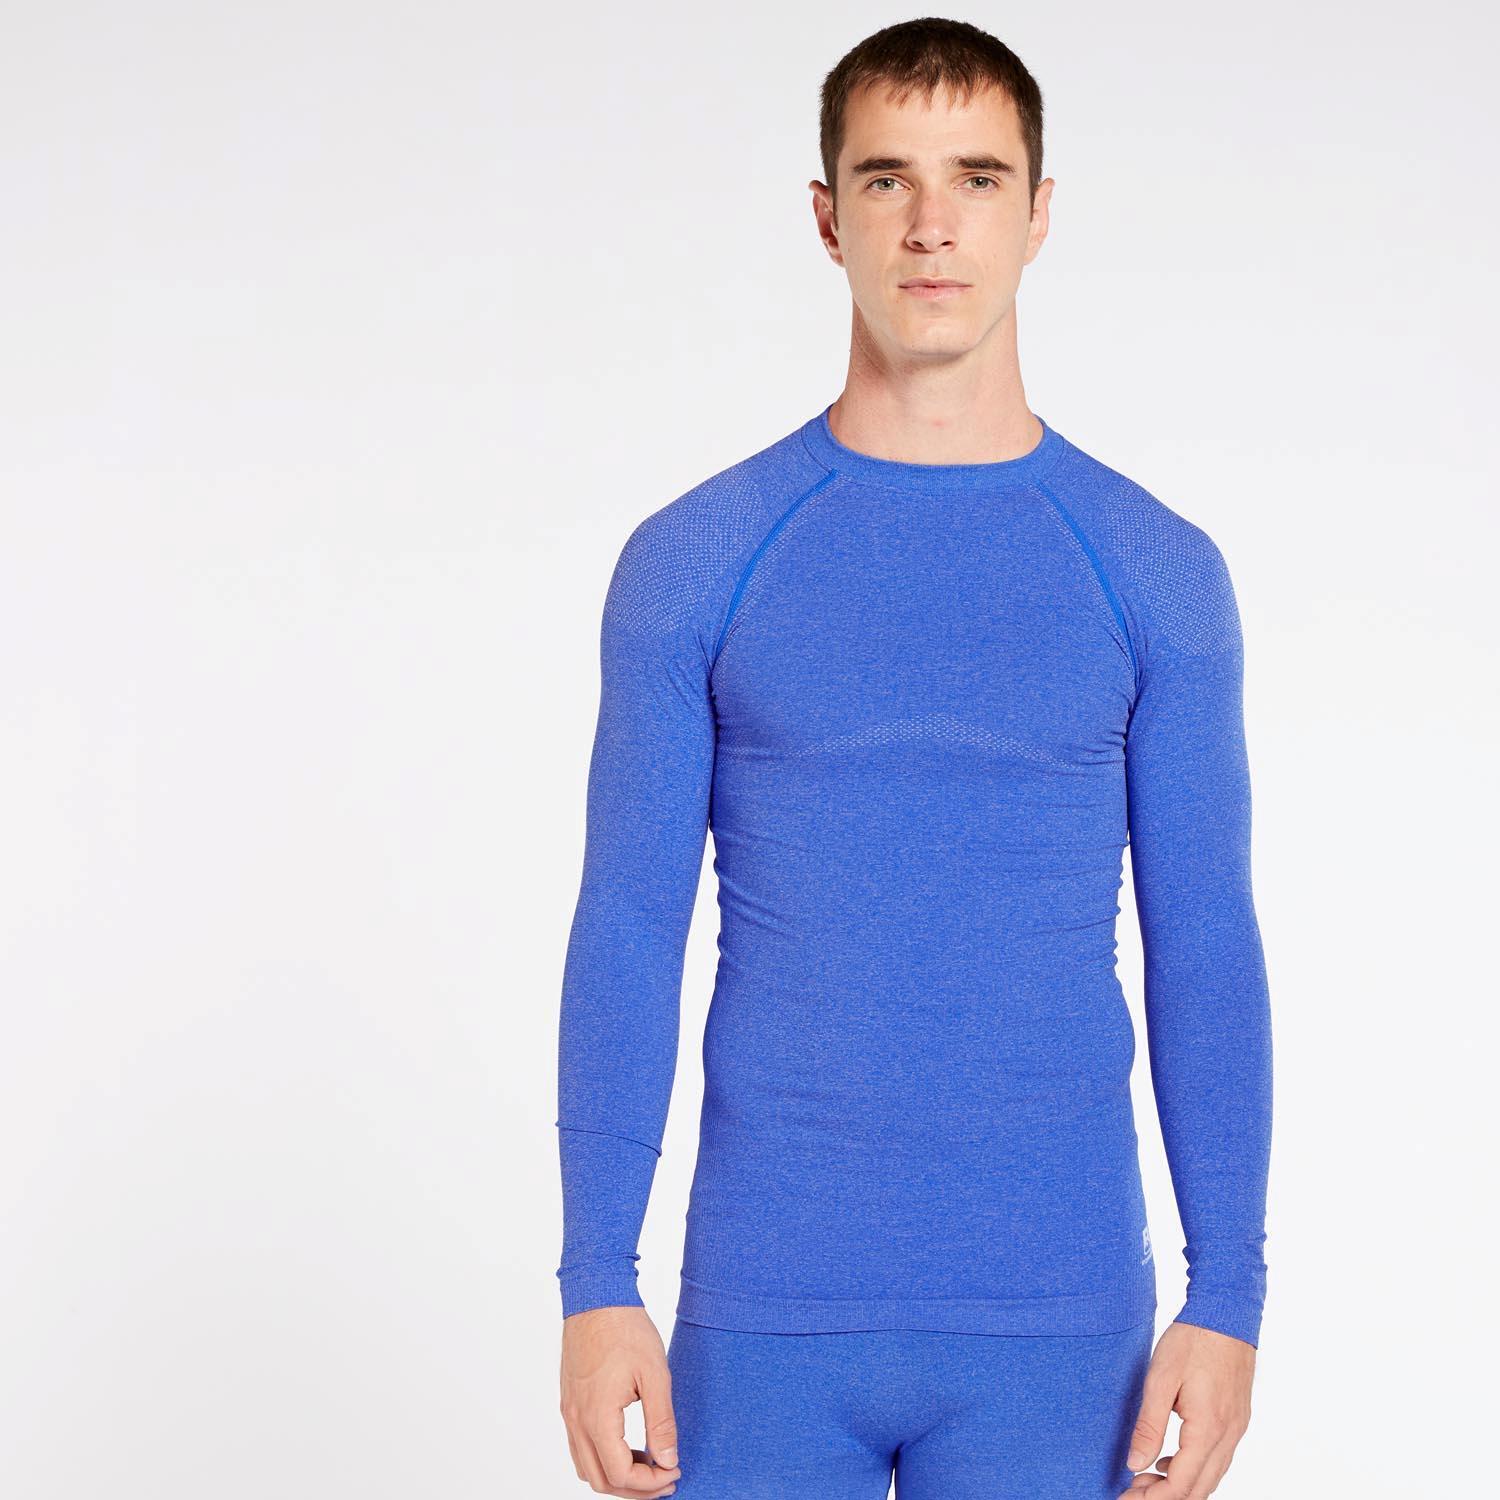 T-shirt Thermique Boriken - Bleu - Sous-chemise Homme sports taille S/M